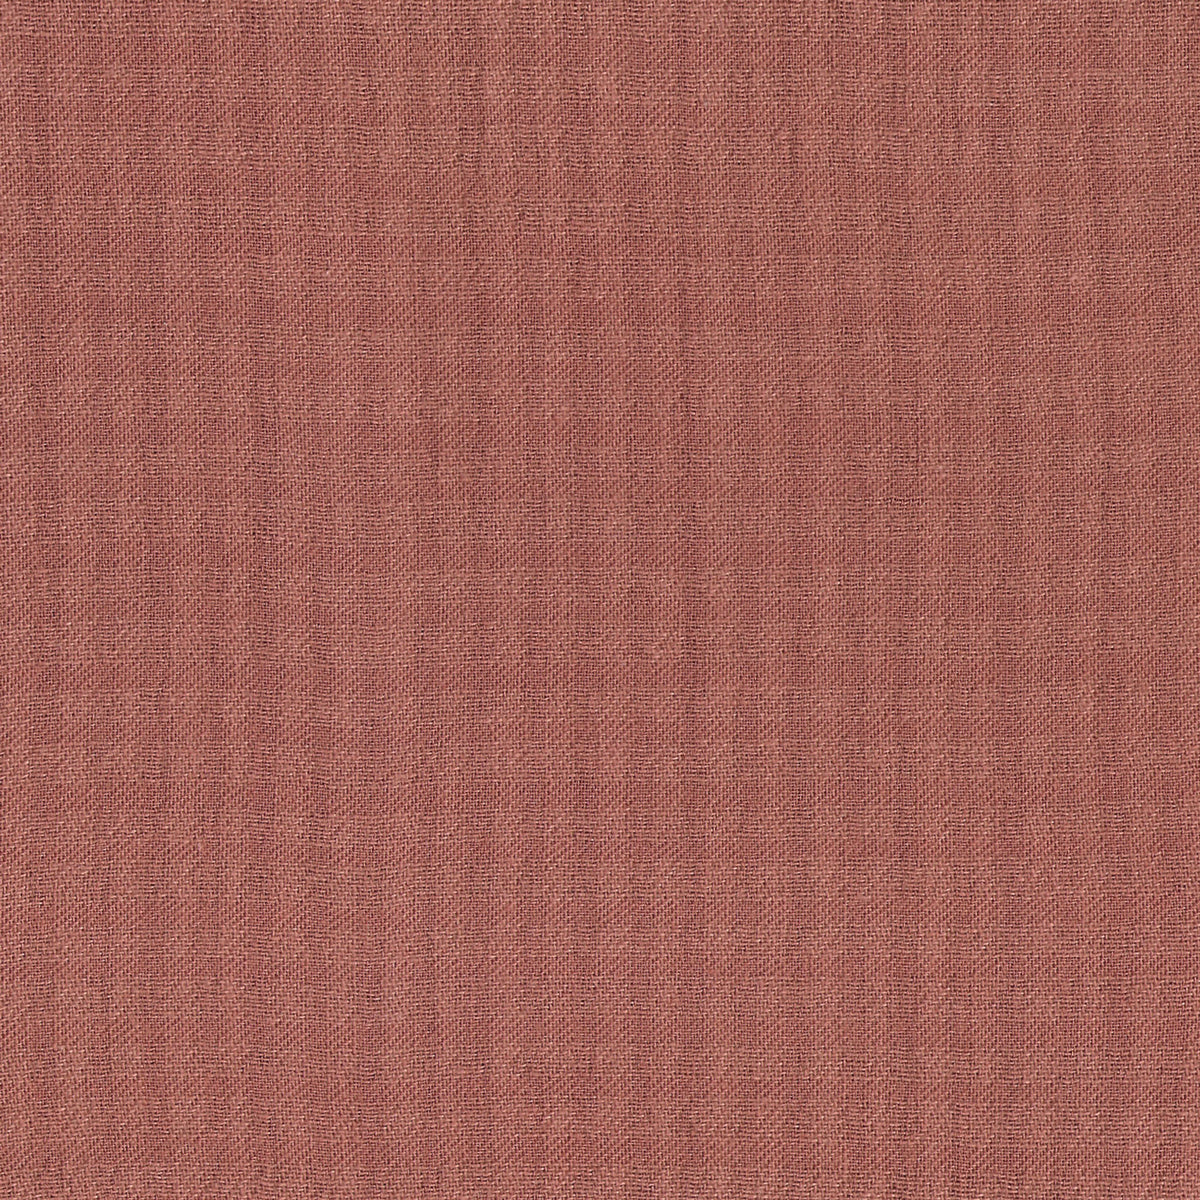 Détail du tissage à petit carreaux du tissu en coton La Maison Naïve coloris rose Sienne